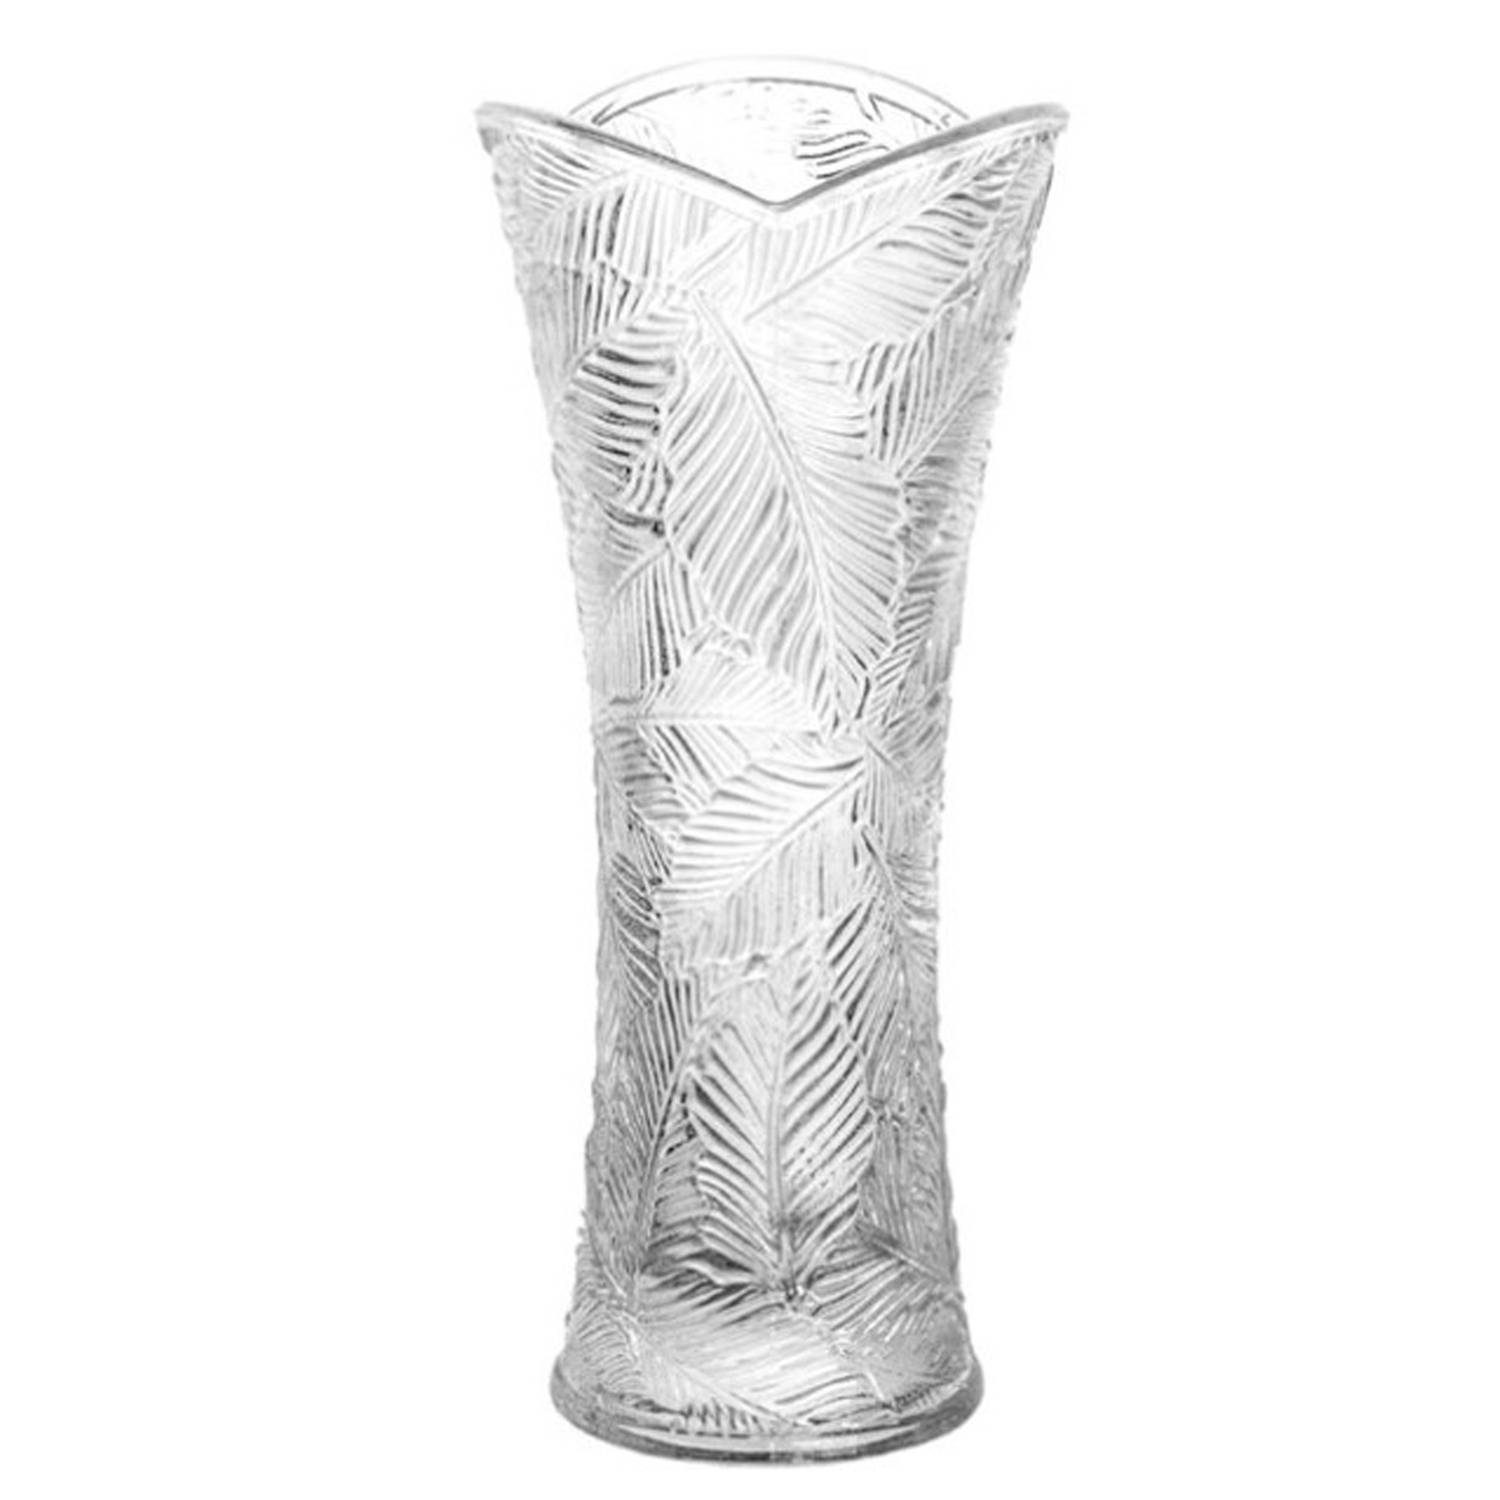 Gerimport Bloemenvaasje - voor kleine stelen/boeketten - helder glas - D8 x H18 cm